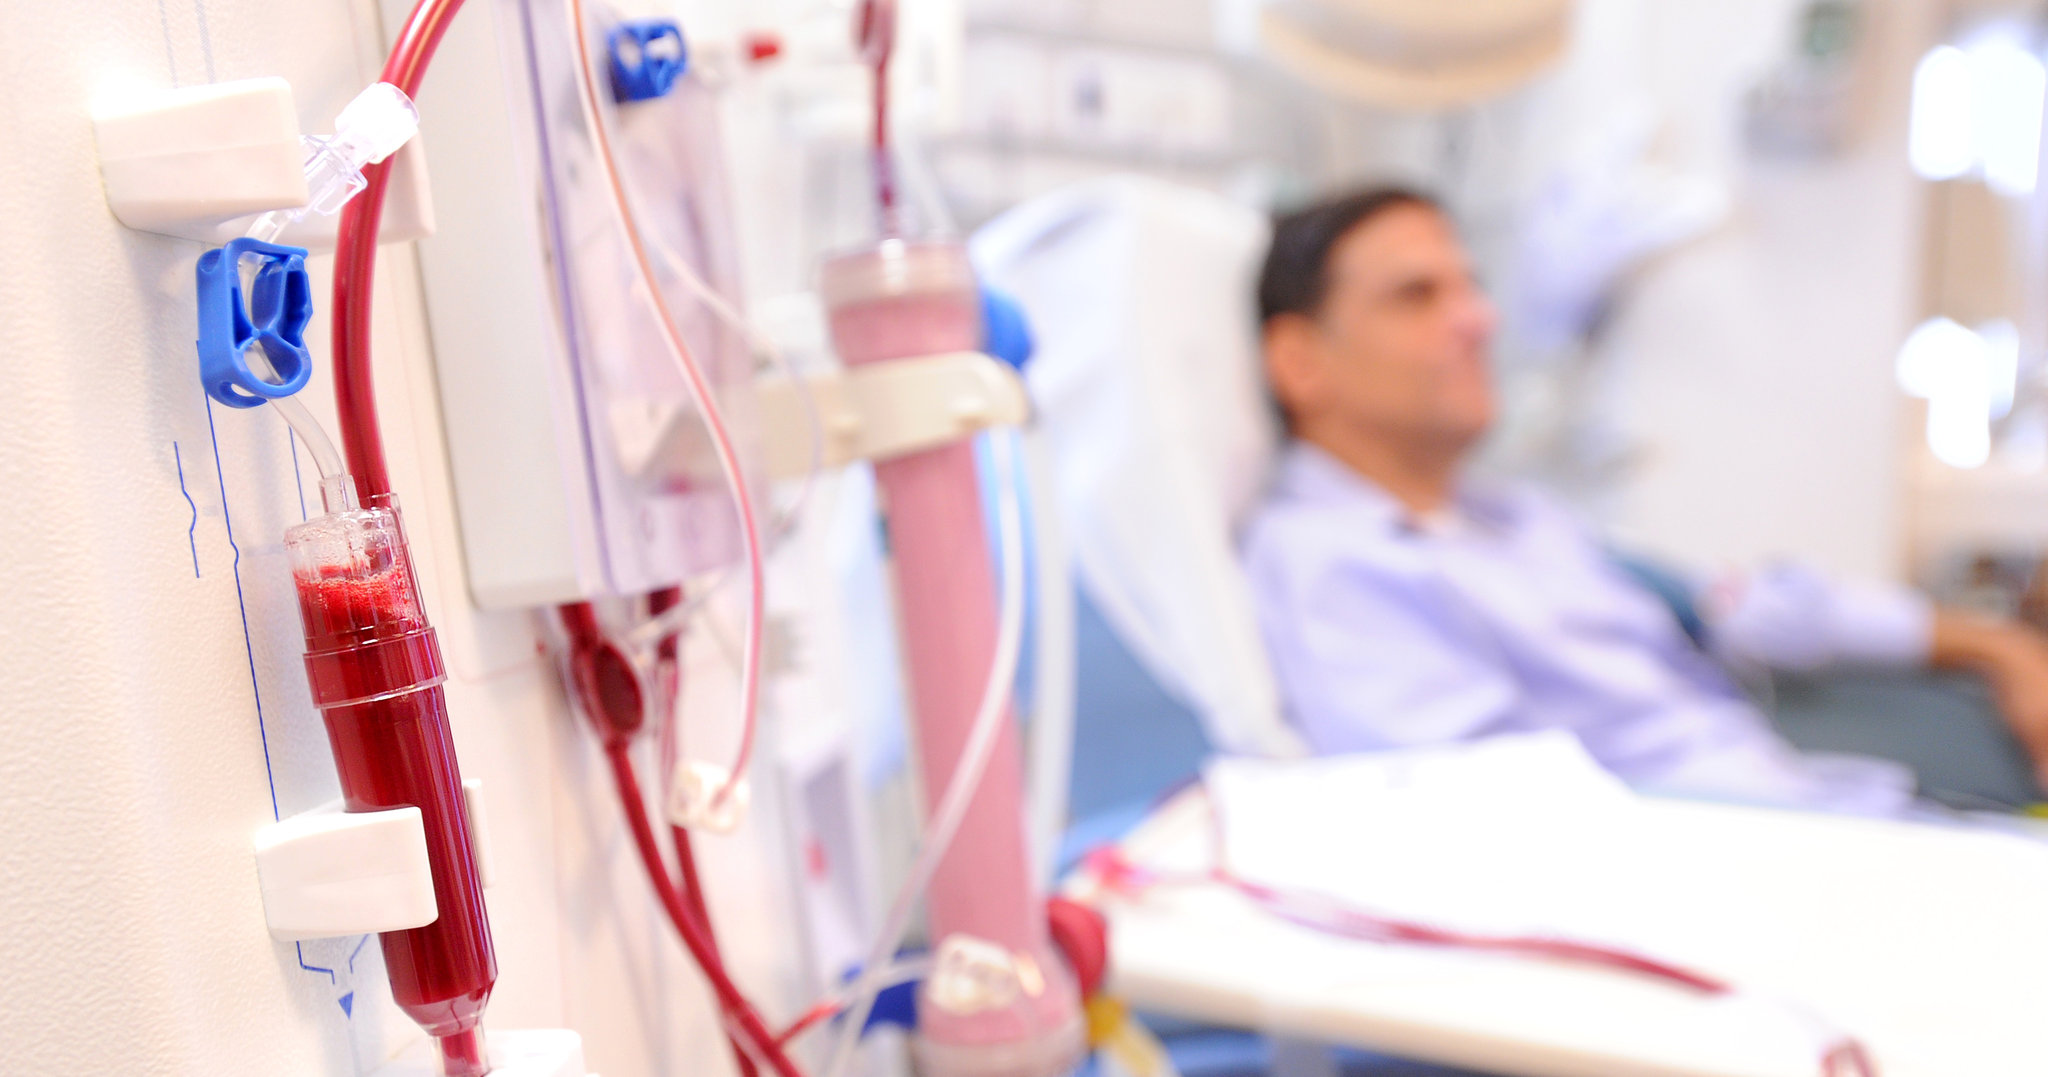 Σε μόνιμο πρόγραμμα αιμοκάθαρσης εντάσσονται ανασφάλιστοι νεφροπαθείς